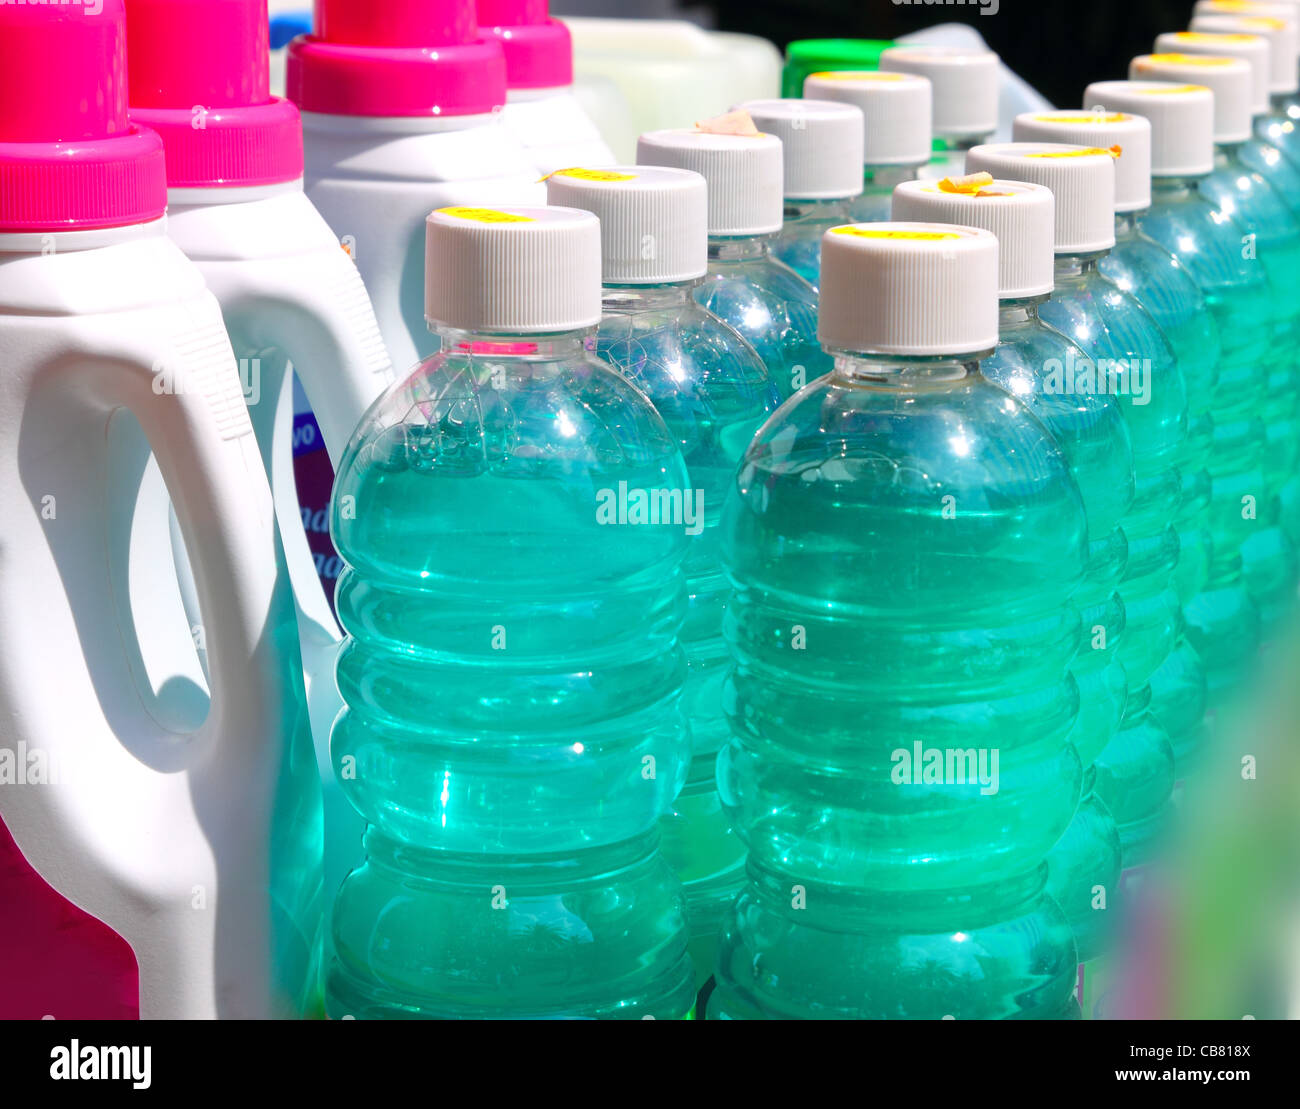 Limpieza interna de los productos químicos en una fila de botellas de  líquido verde Fotografía de stock - Alamy